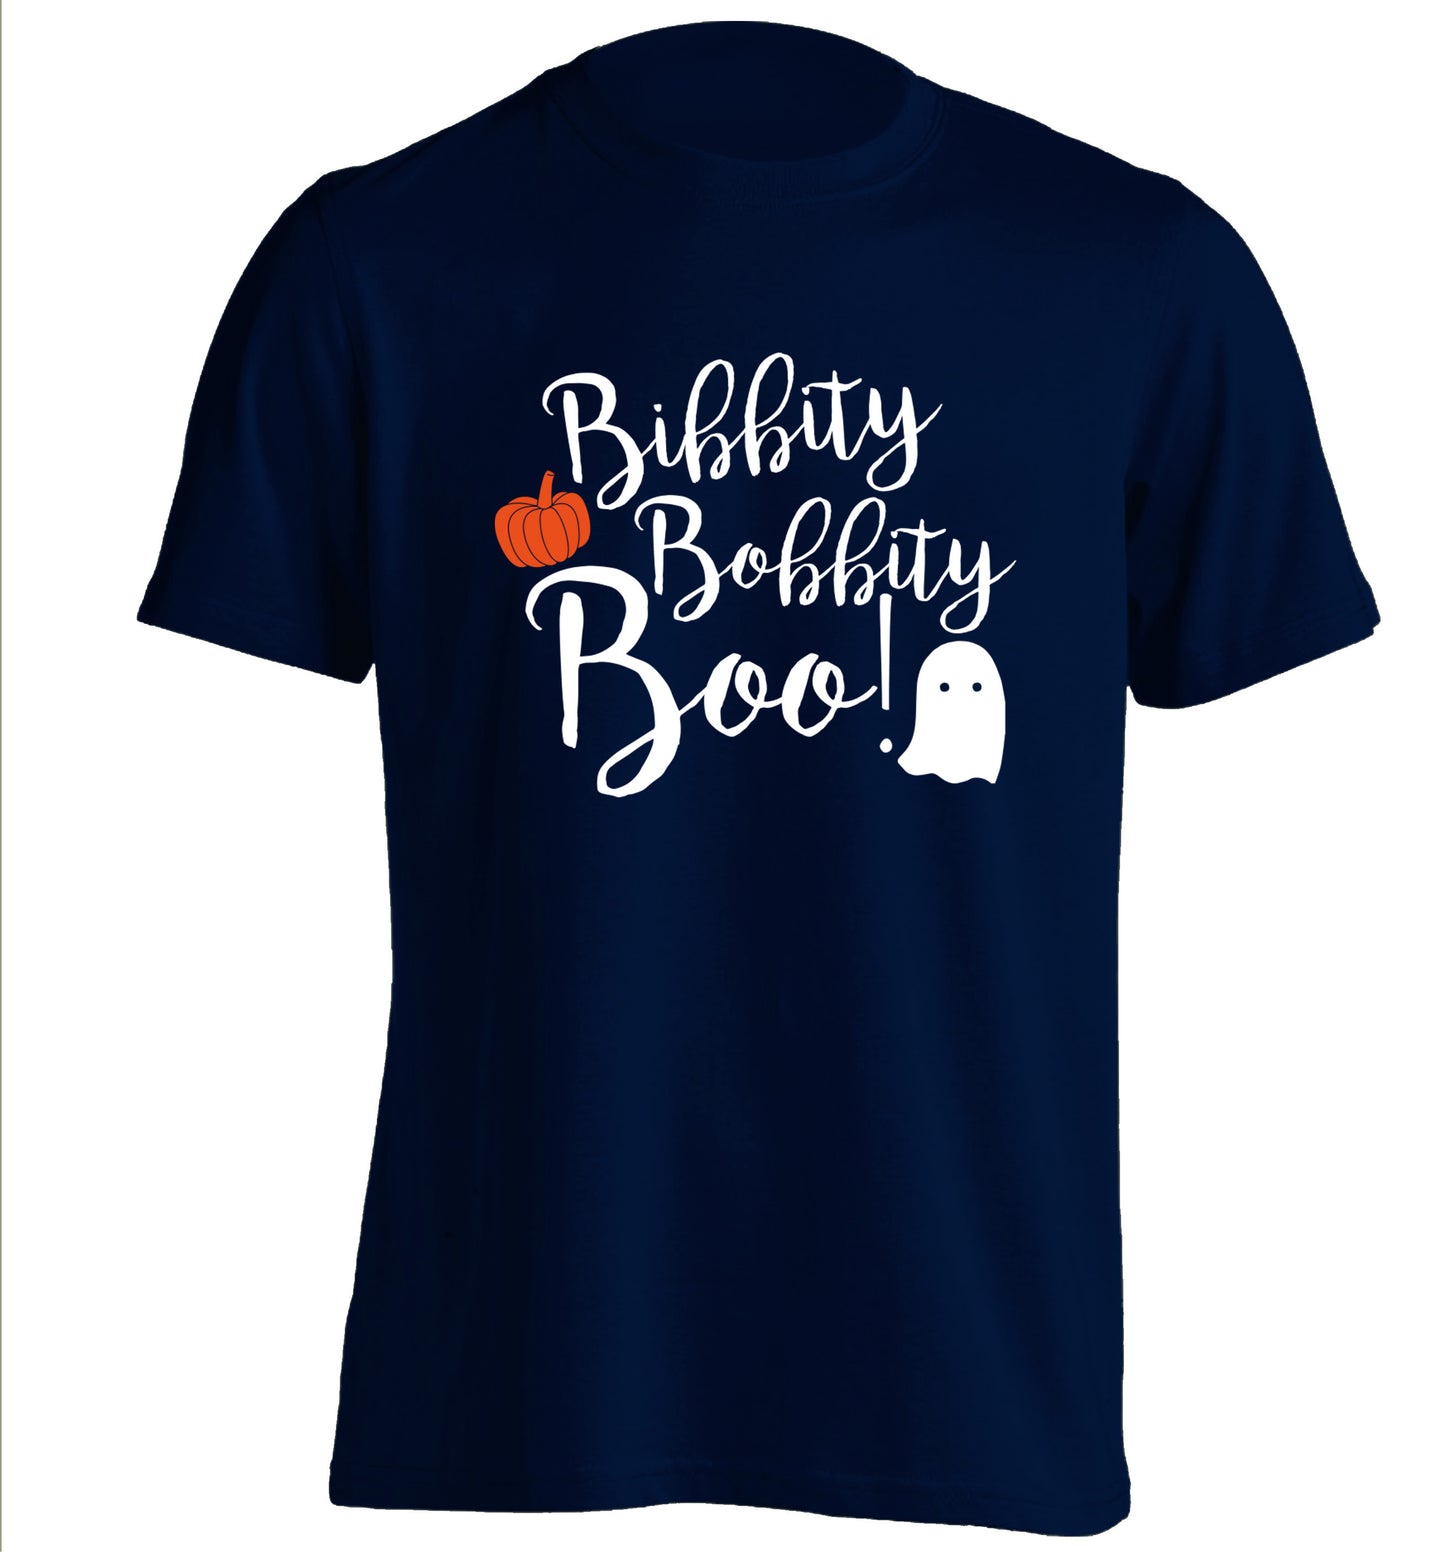 Bibbity bobbity boo! adults unisex navy Tshirt 2XL